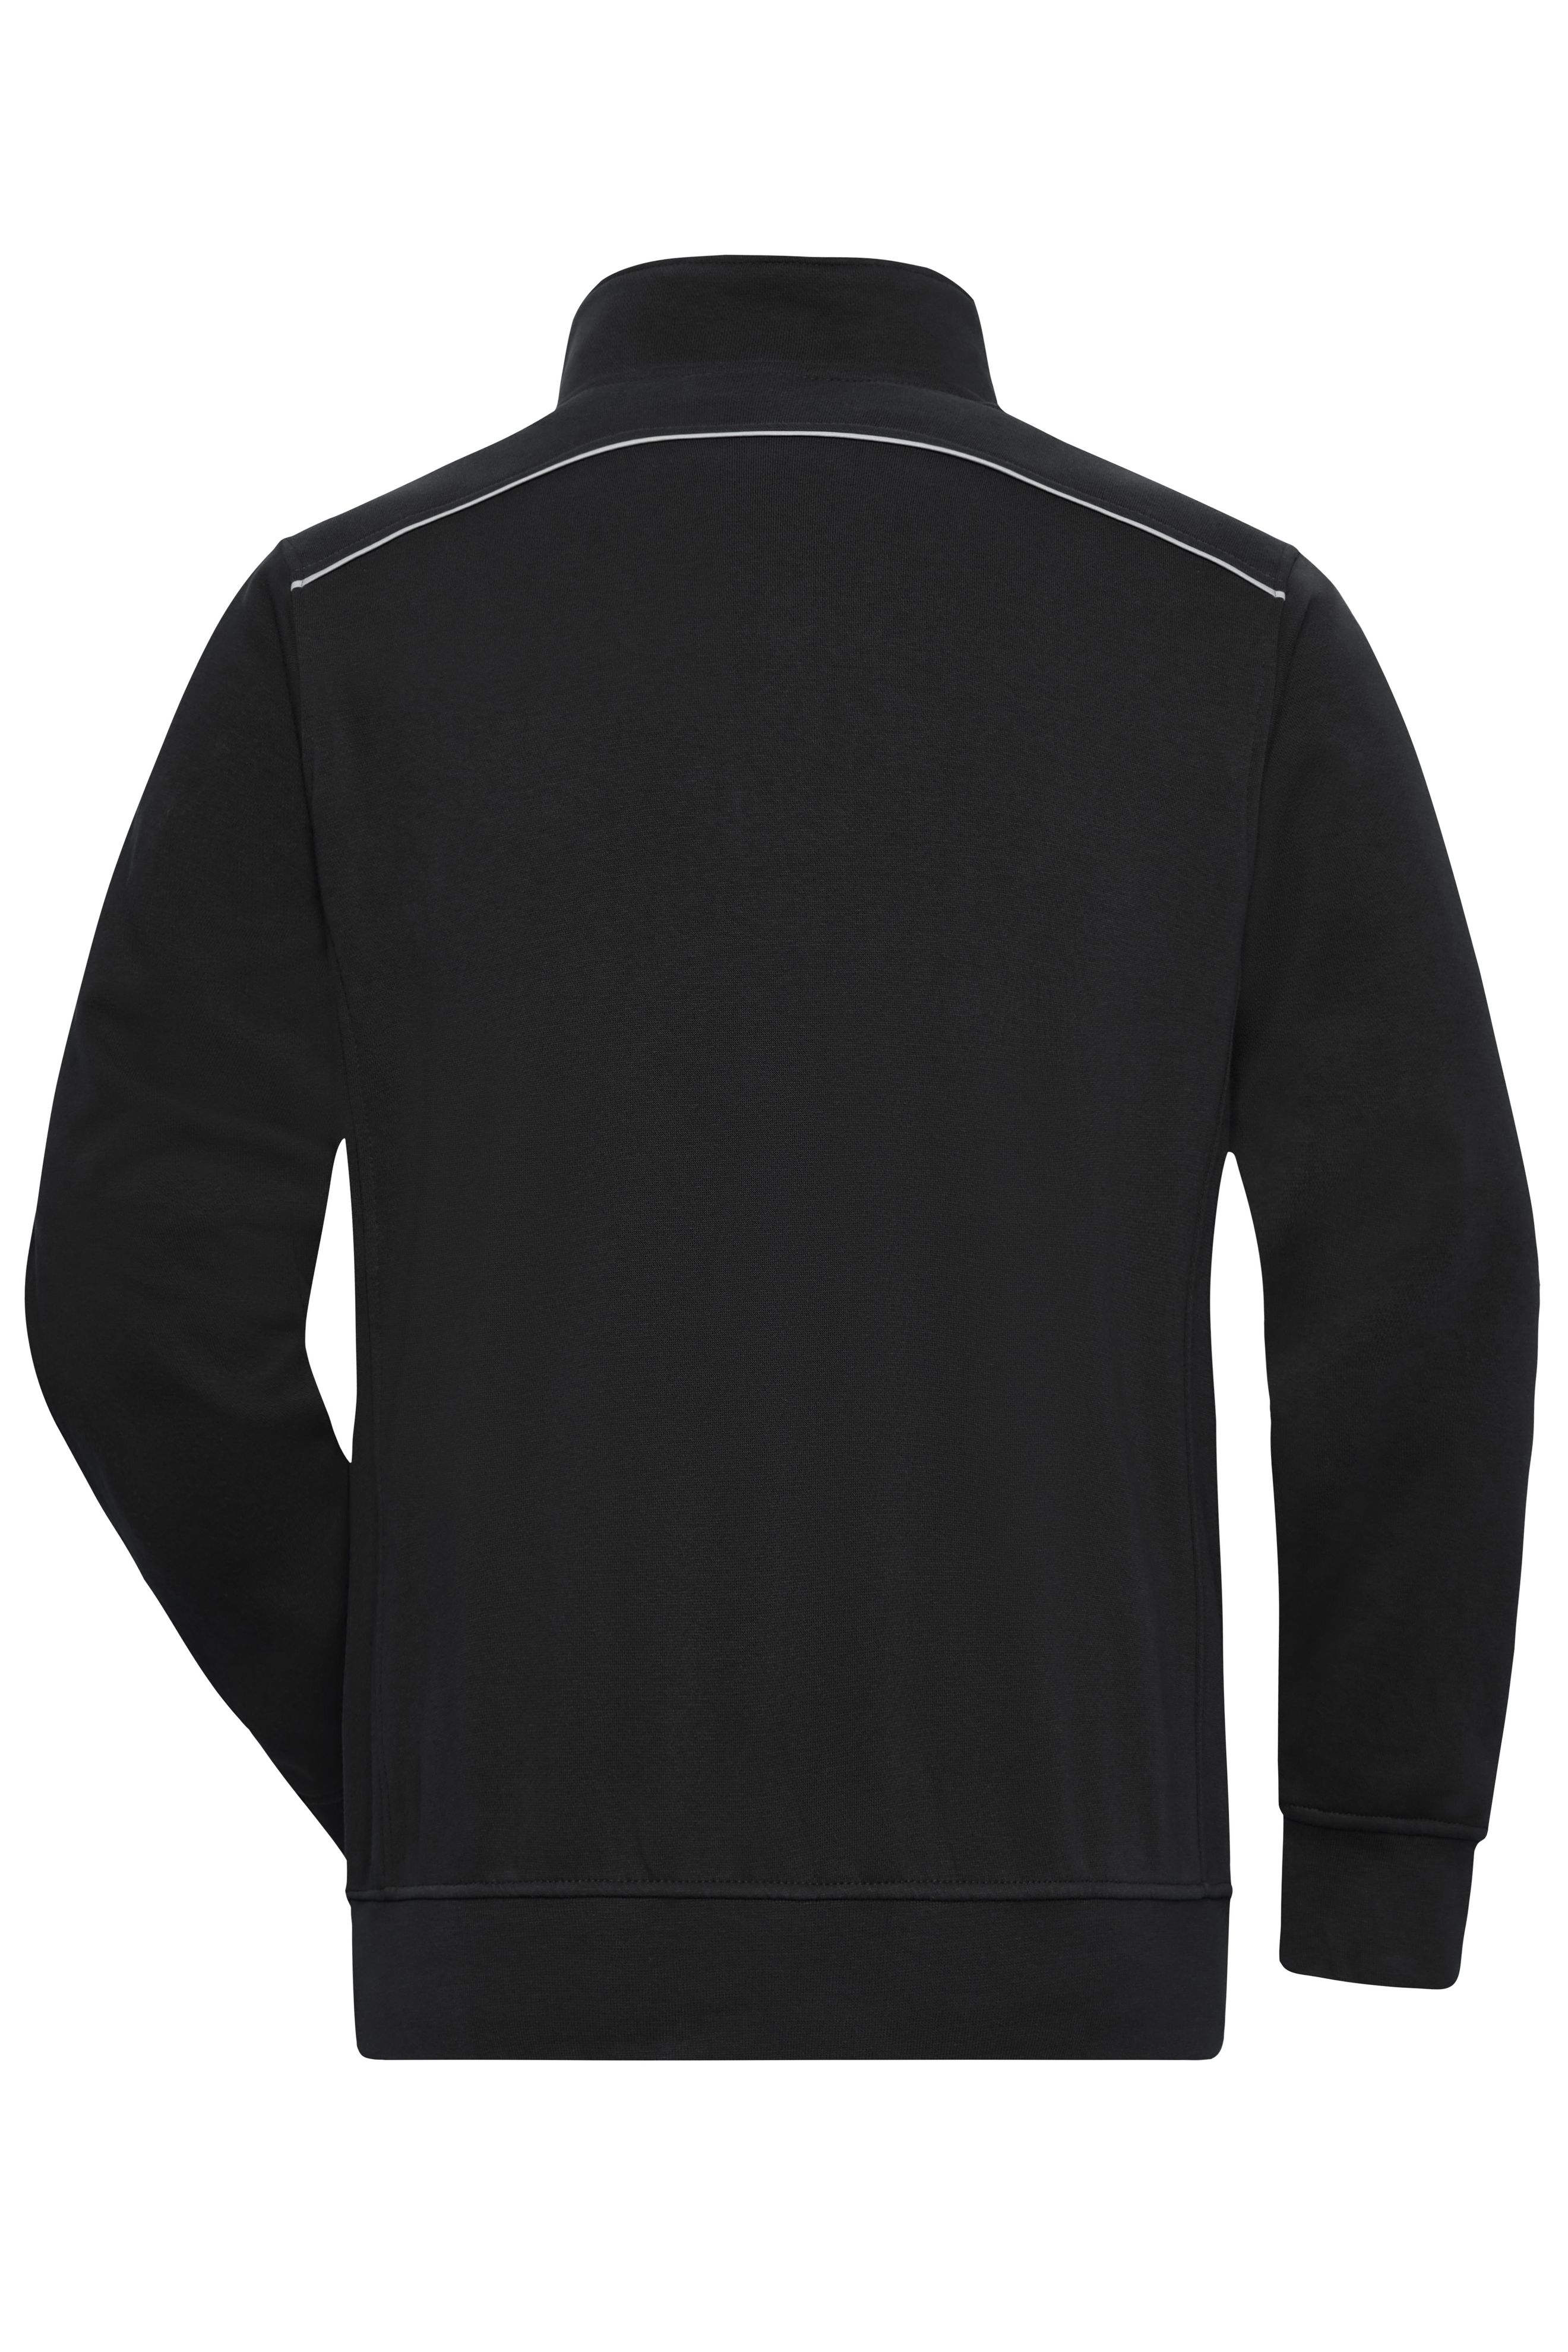 Workwear Half-Zip Sweat - SOLID - JN895 Sweatshirt mit Stehkragen, Reißverschluss und Kontrastpaspel